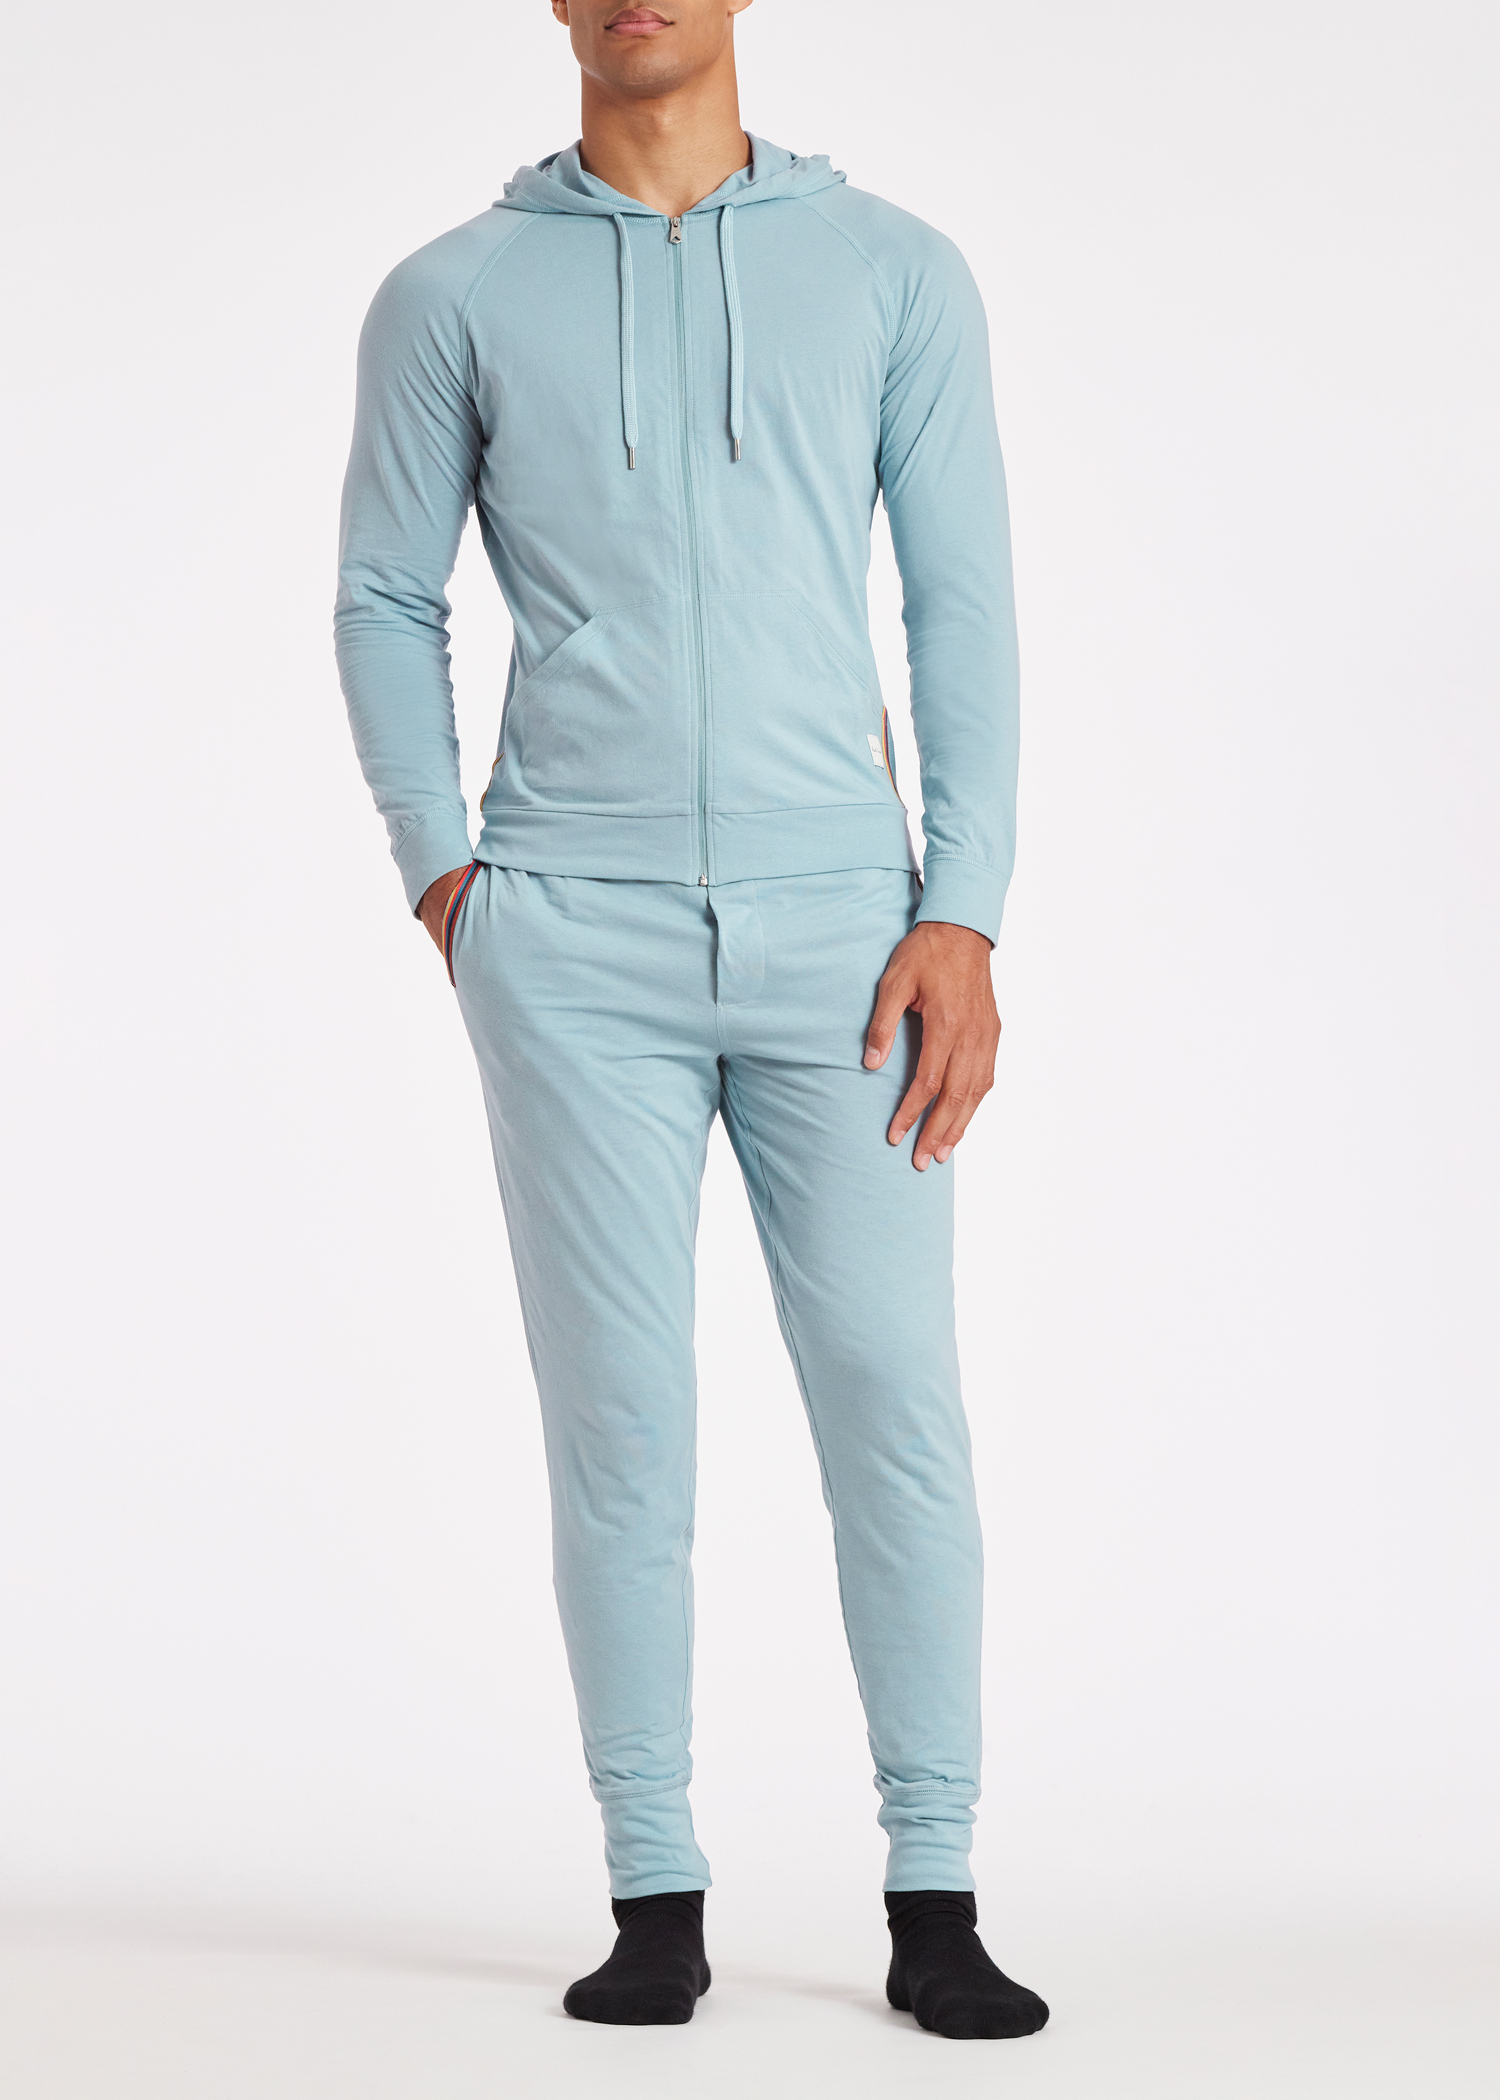 Paul Smith Loungewear Men's Jersey Shorts - Inky Blue